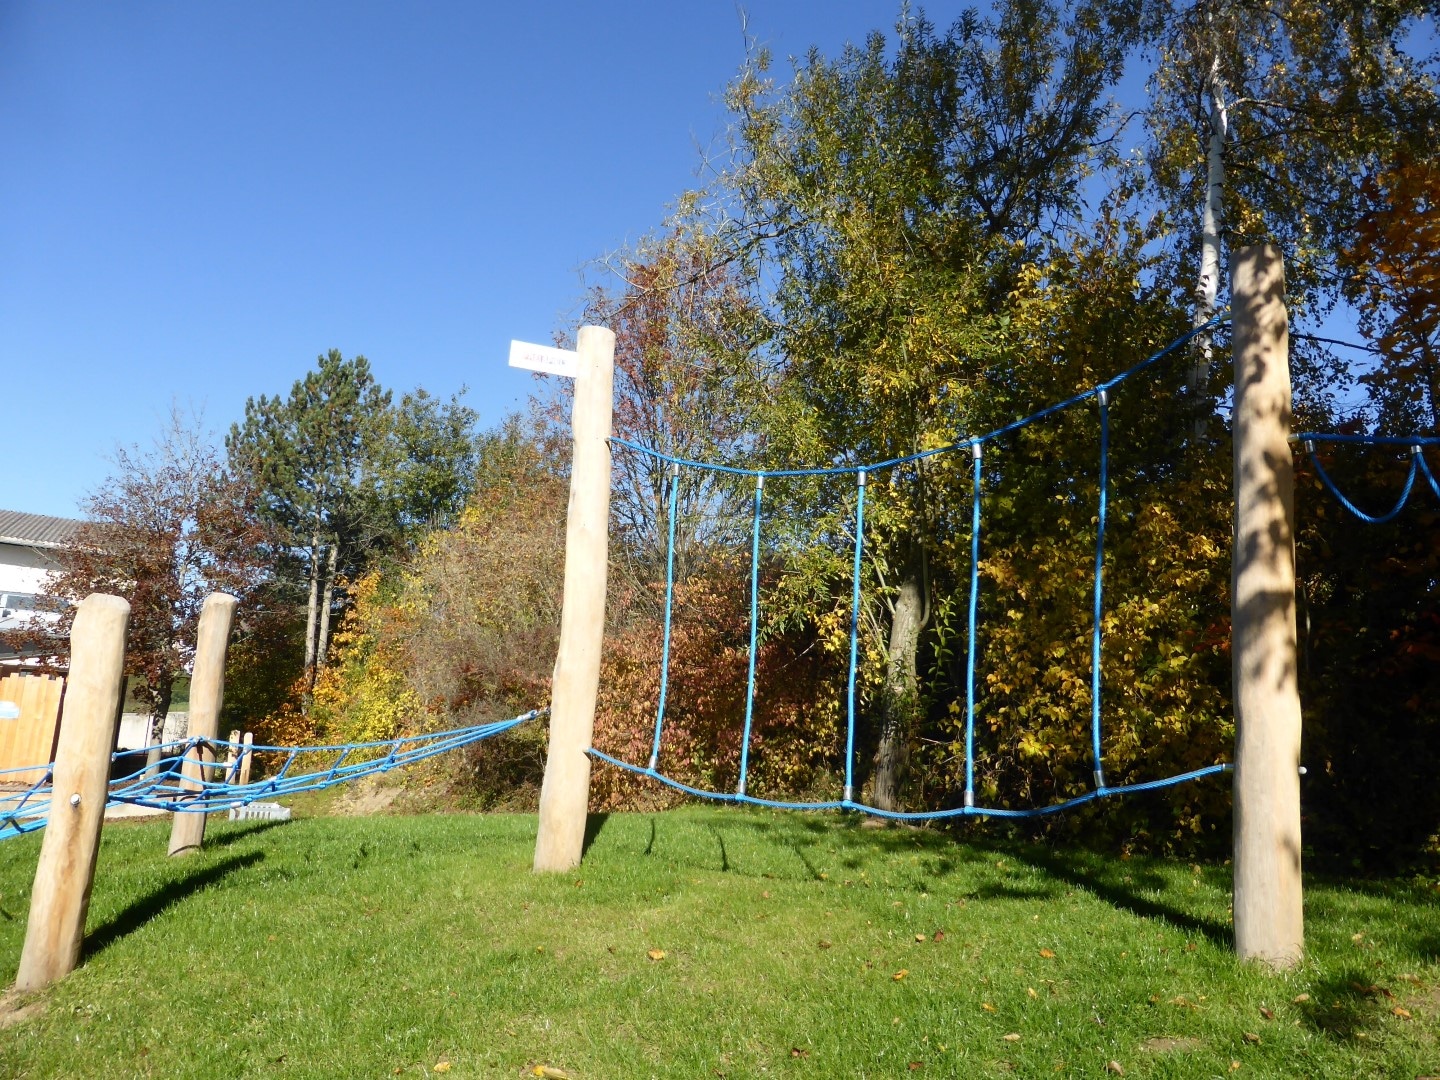 Kletterdschungel Marie auf dem Spielplatz für Kinder